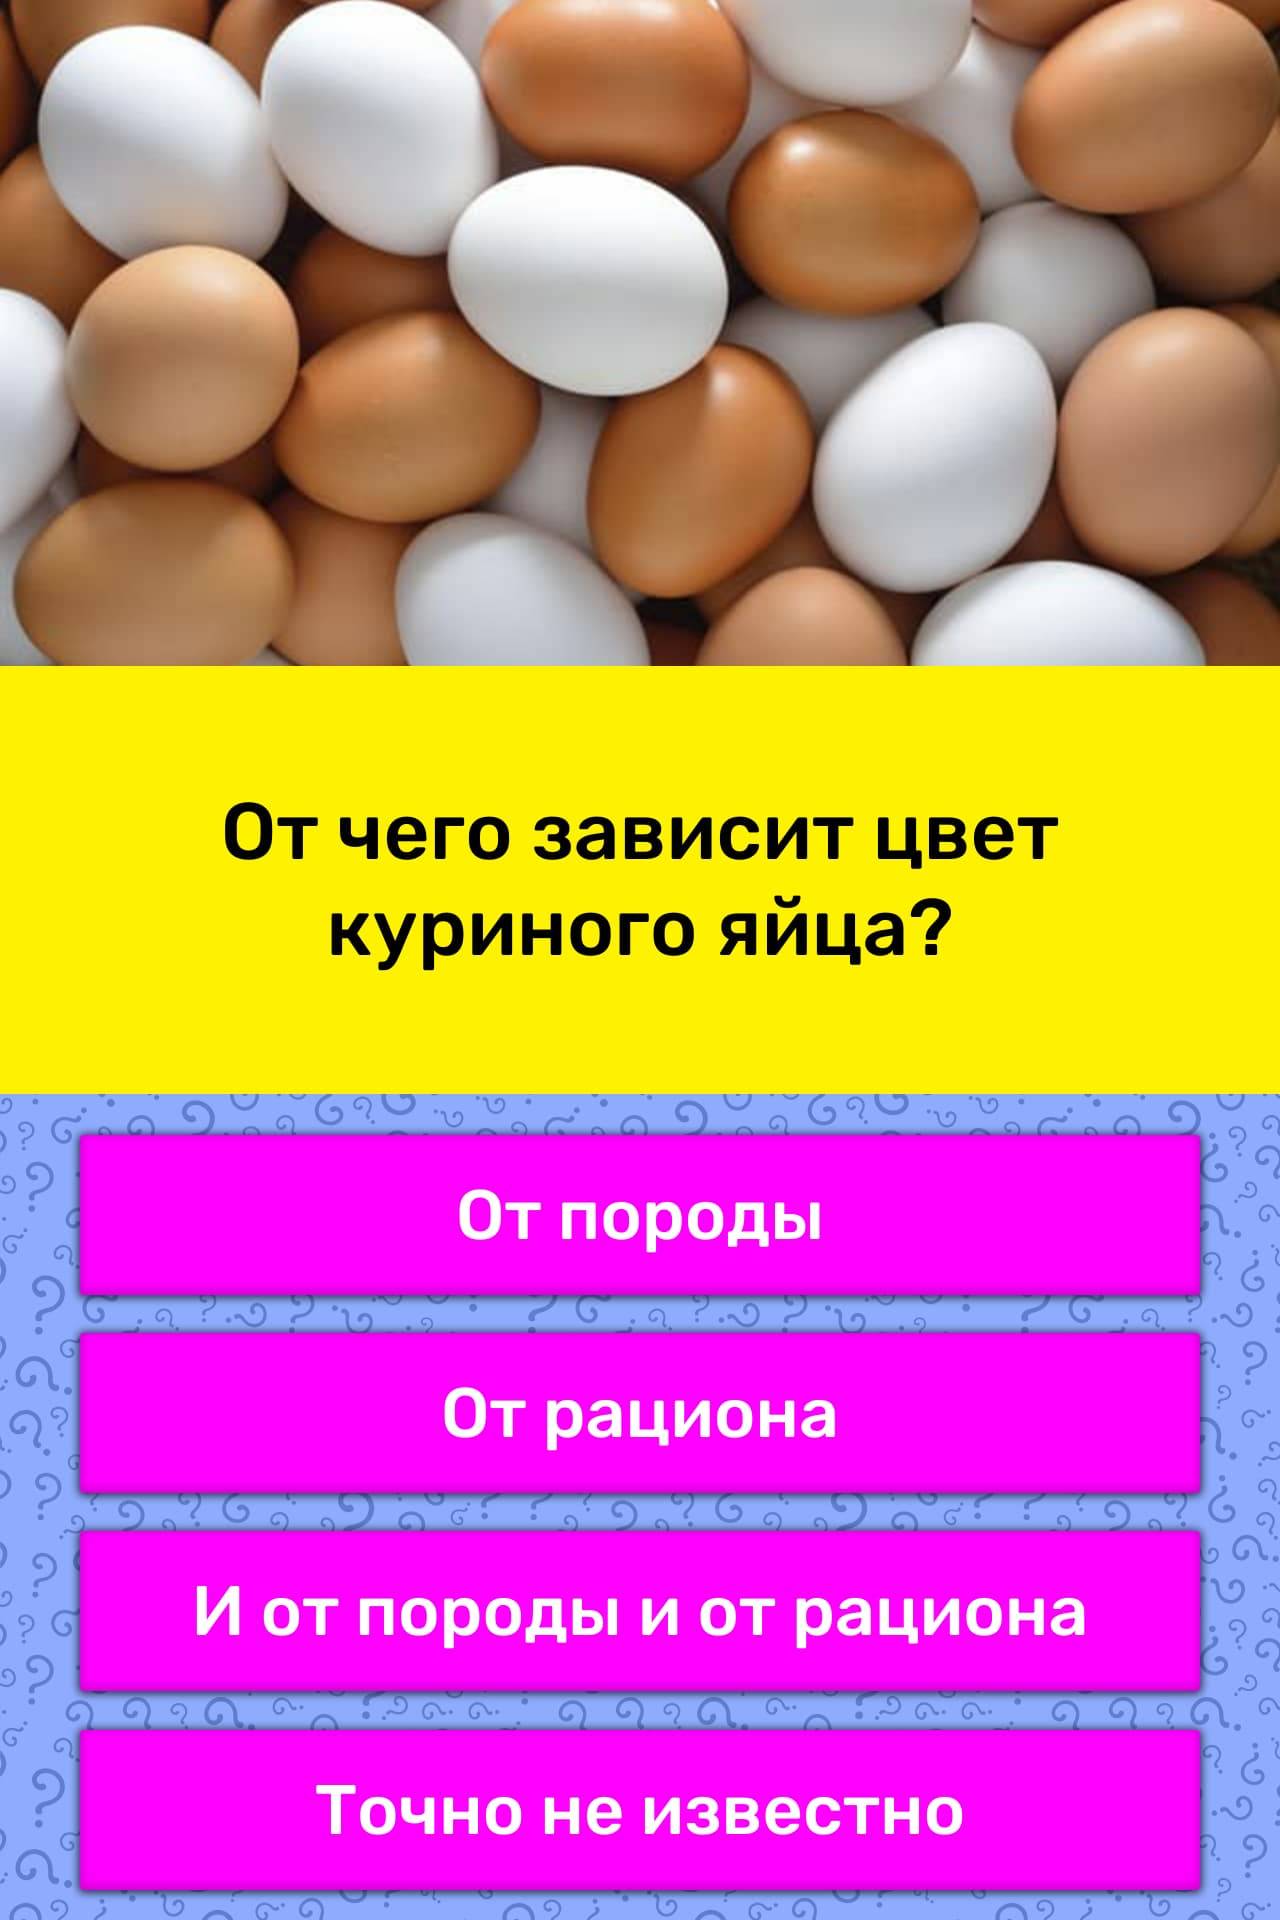 Покупая яйца, выбираете только белые или коричневые Верите в исключительную пользу голубых яиц Тогда обязательно прочтите эту статью — вы будете удивлены